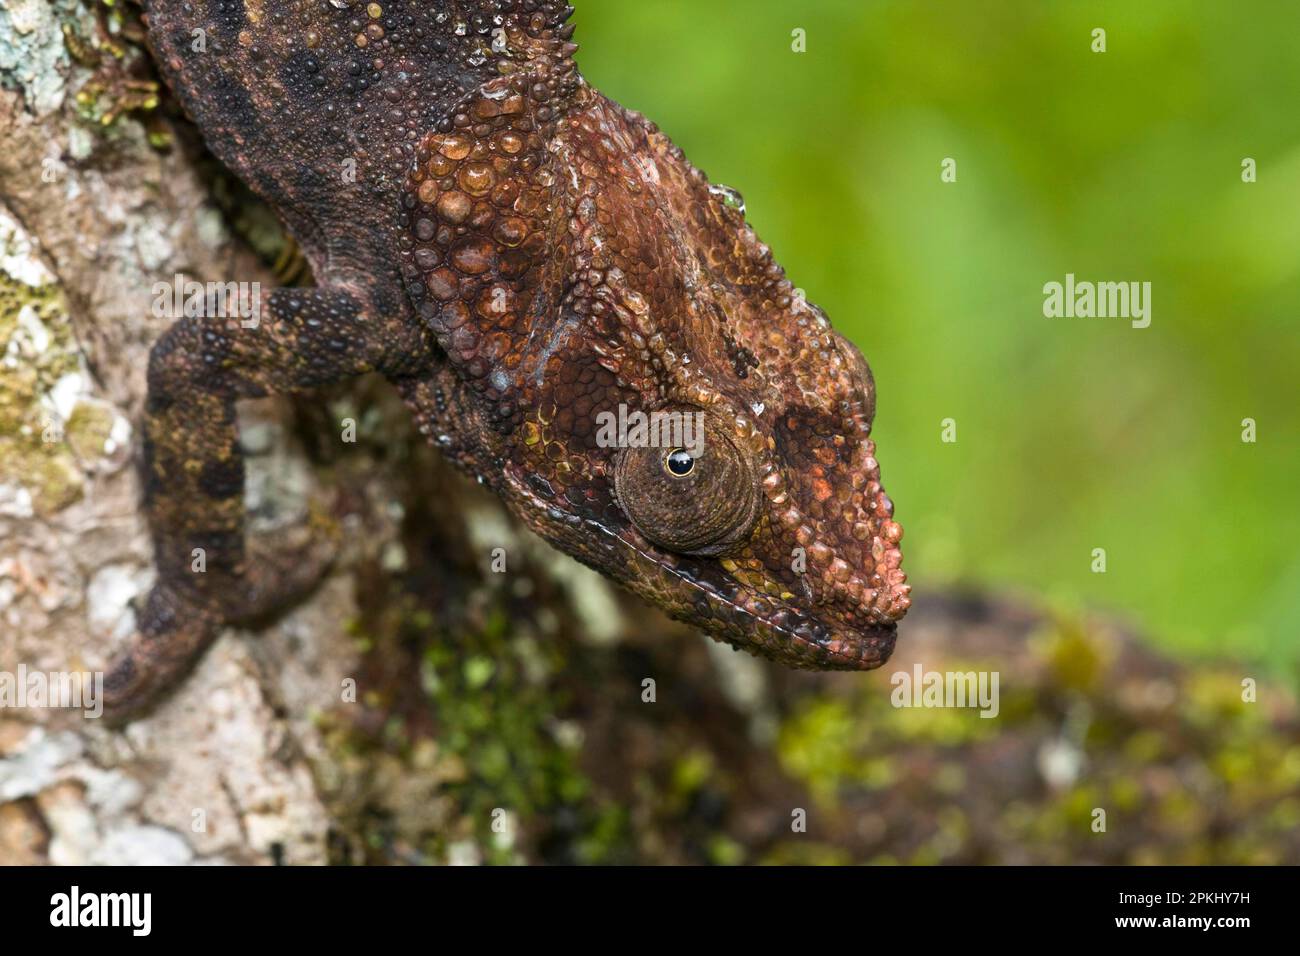 Short-horned chameleon (Calumma brevicorne), Andasibe, Madagascar Stock Photo